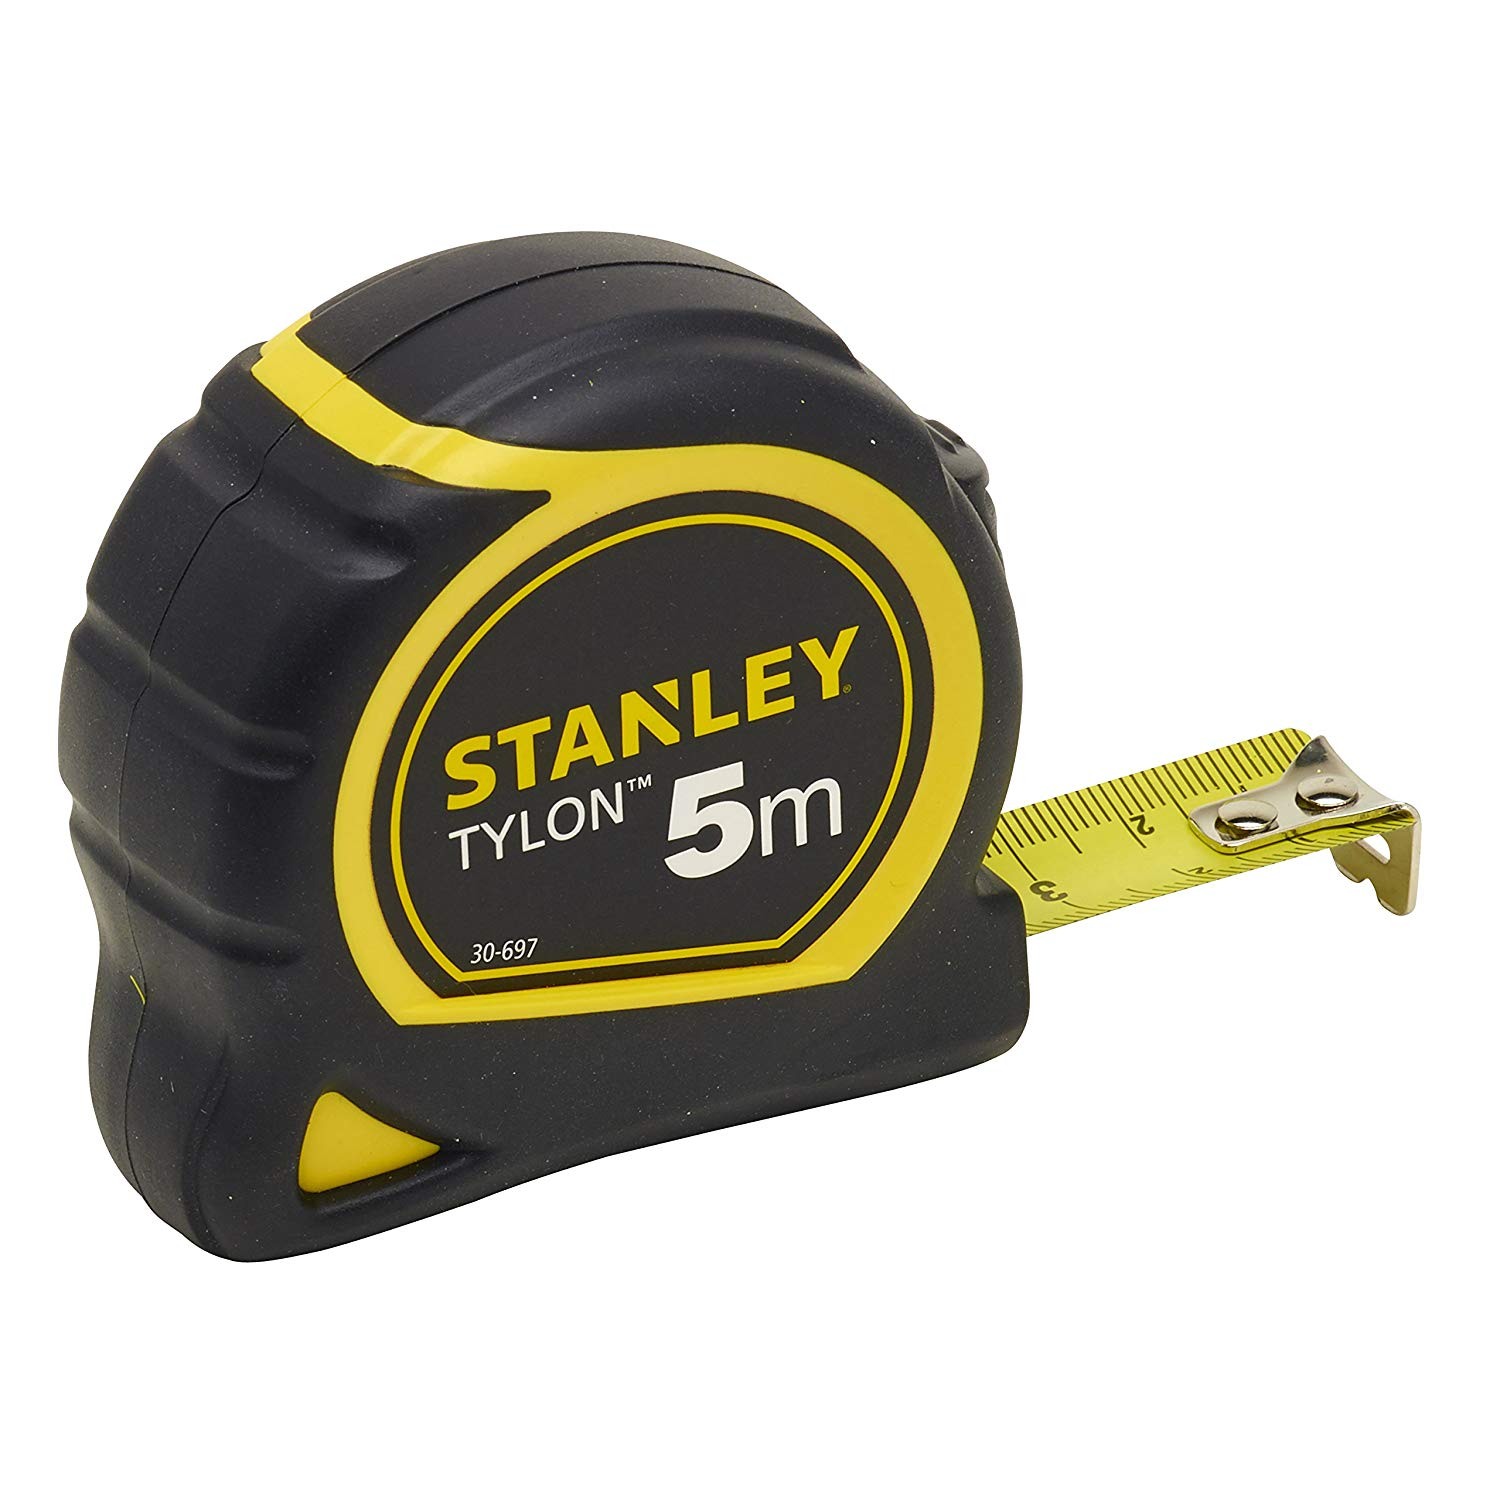 Ruleta Stanley Tylon 5m – 0-30-697 0-30-697